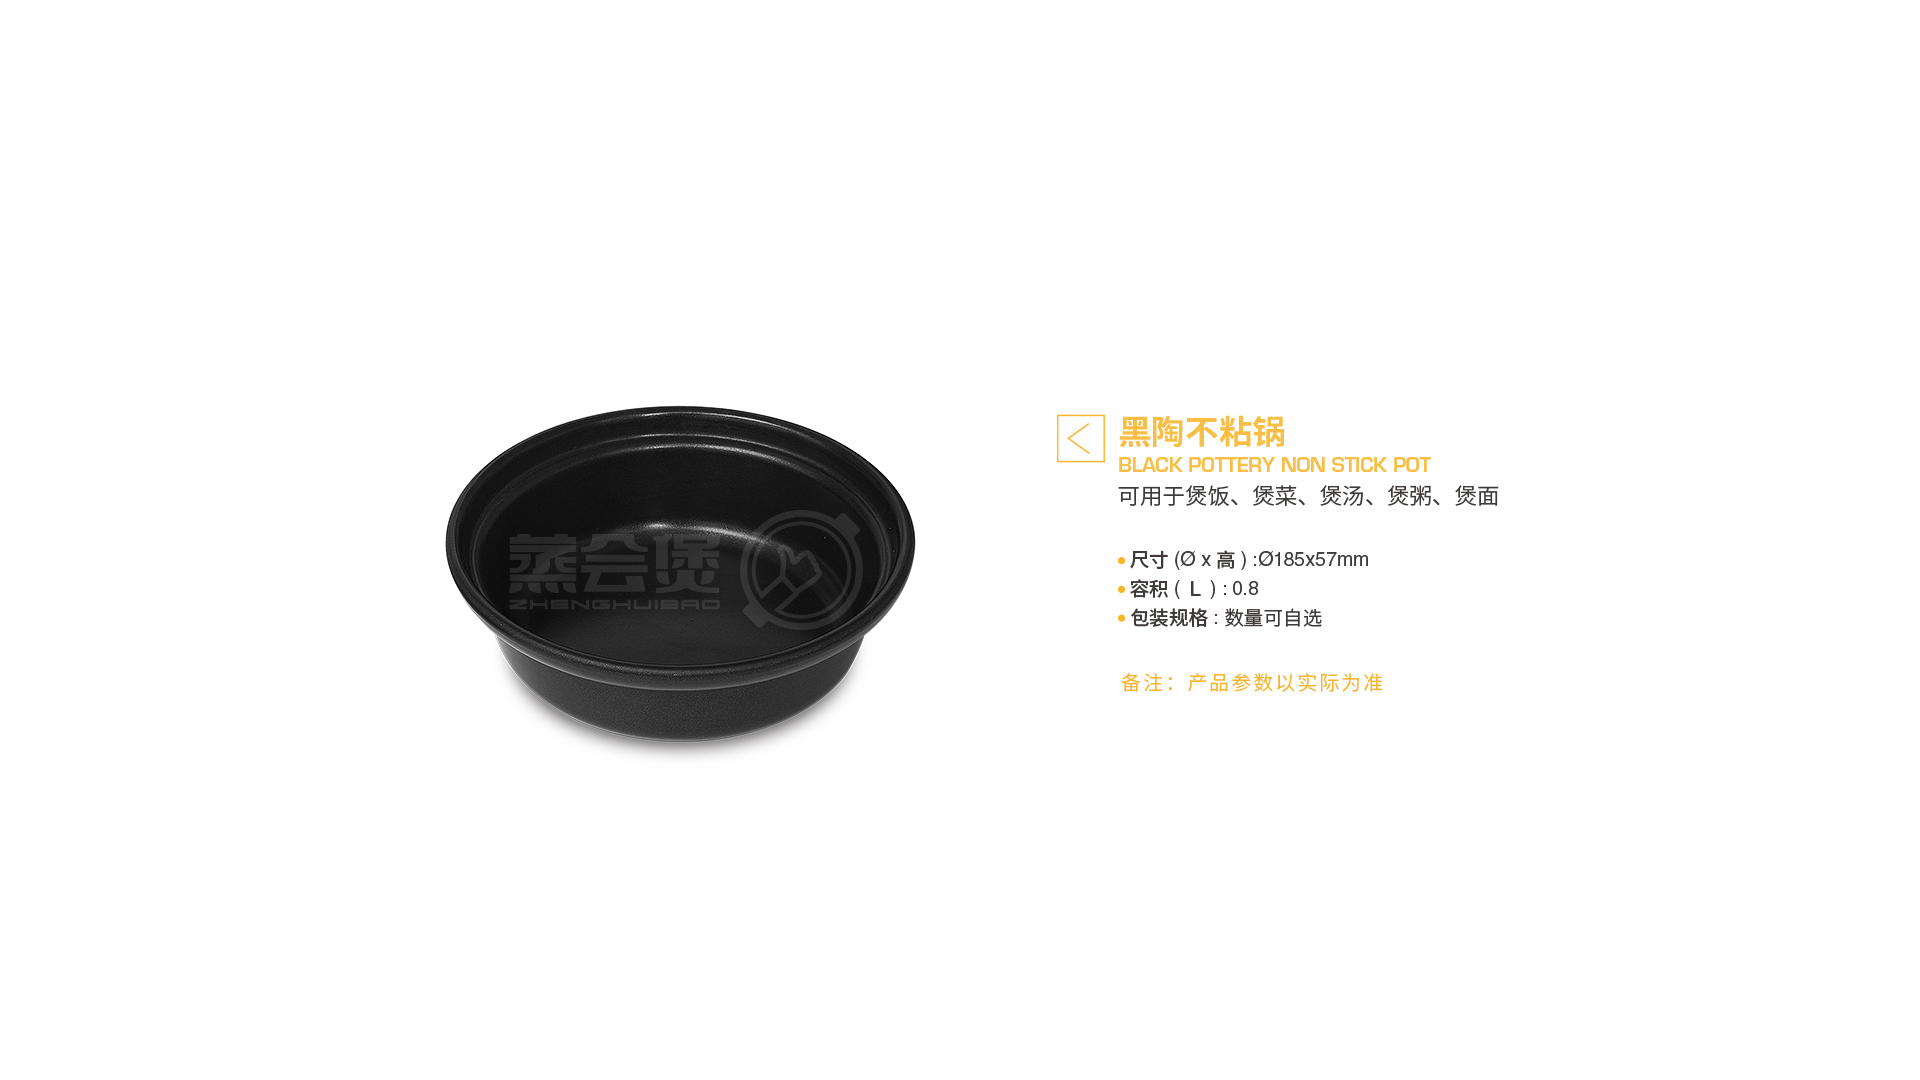 zhenghuibao_supporing_materials_black_pottery_non_stick_pot_parameter.jpg